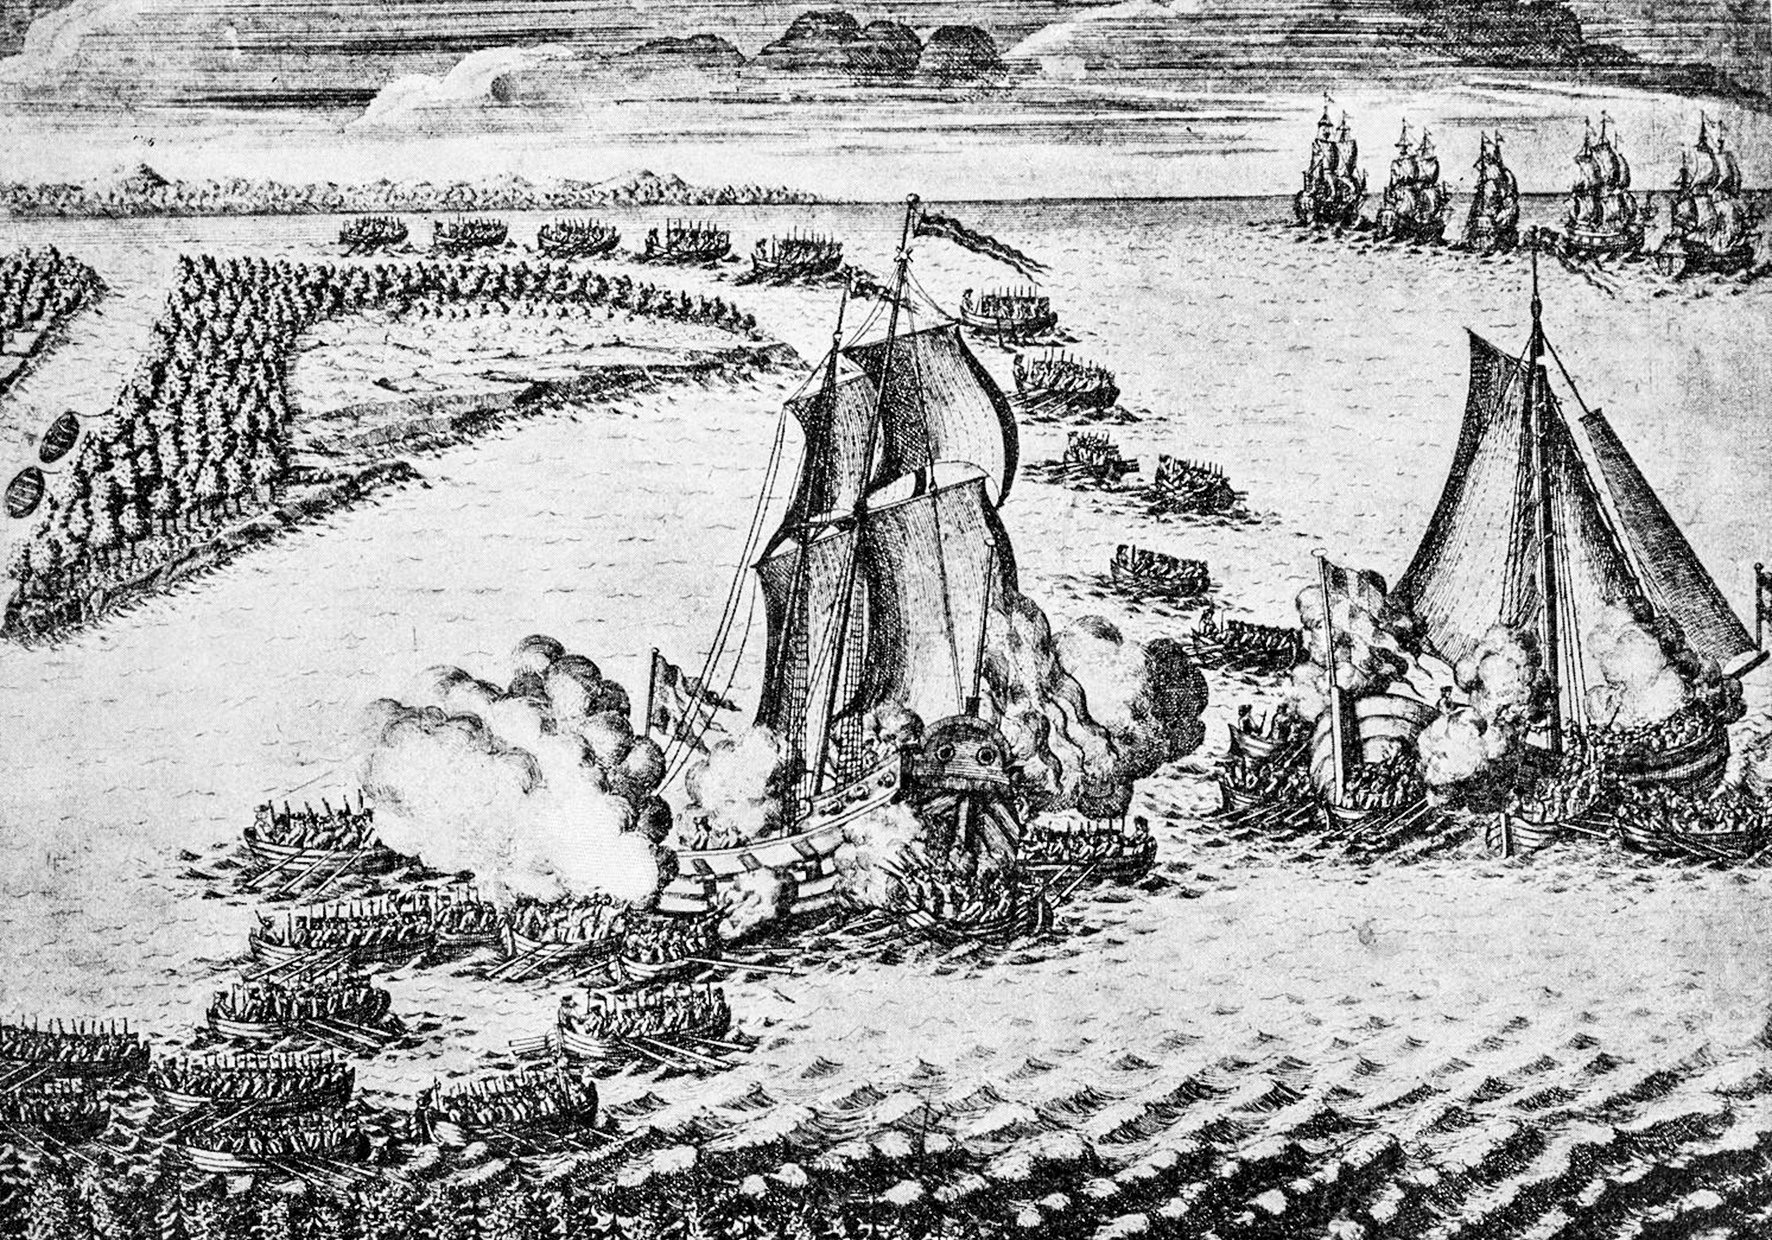 1700 е. Взятие Петром i шведских кораблей «гедан» и «астрильд» в Устье Невы. Бой в Устье Невы 18 мая 1703. Взятие Ниеншанца 1703.